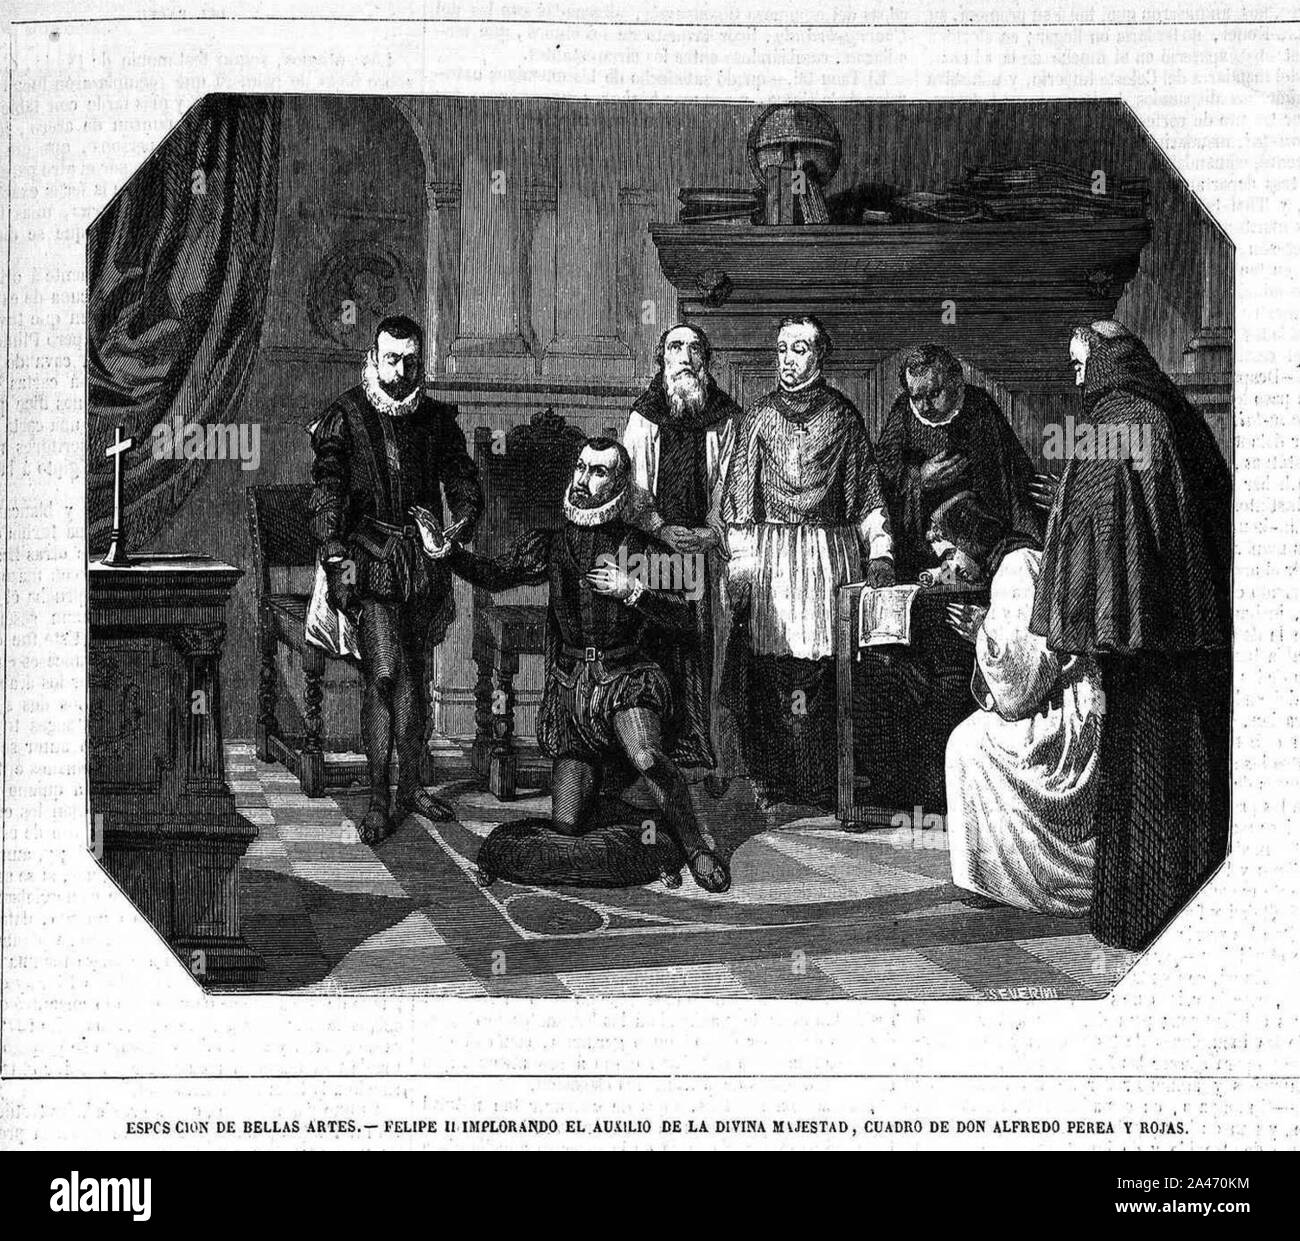 Felipe II implorando el auxilio de la Divina Majestad, cuadro de don Alfredo Perea y Rojas. Stock Photo